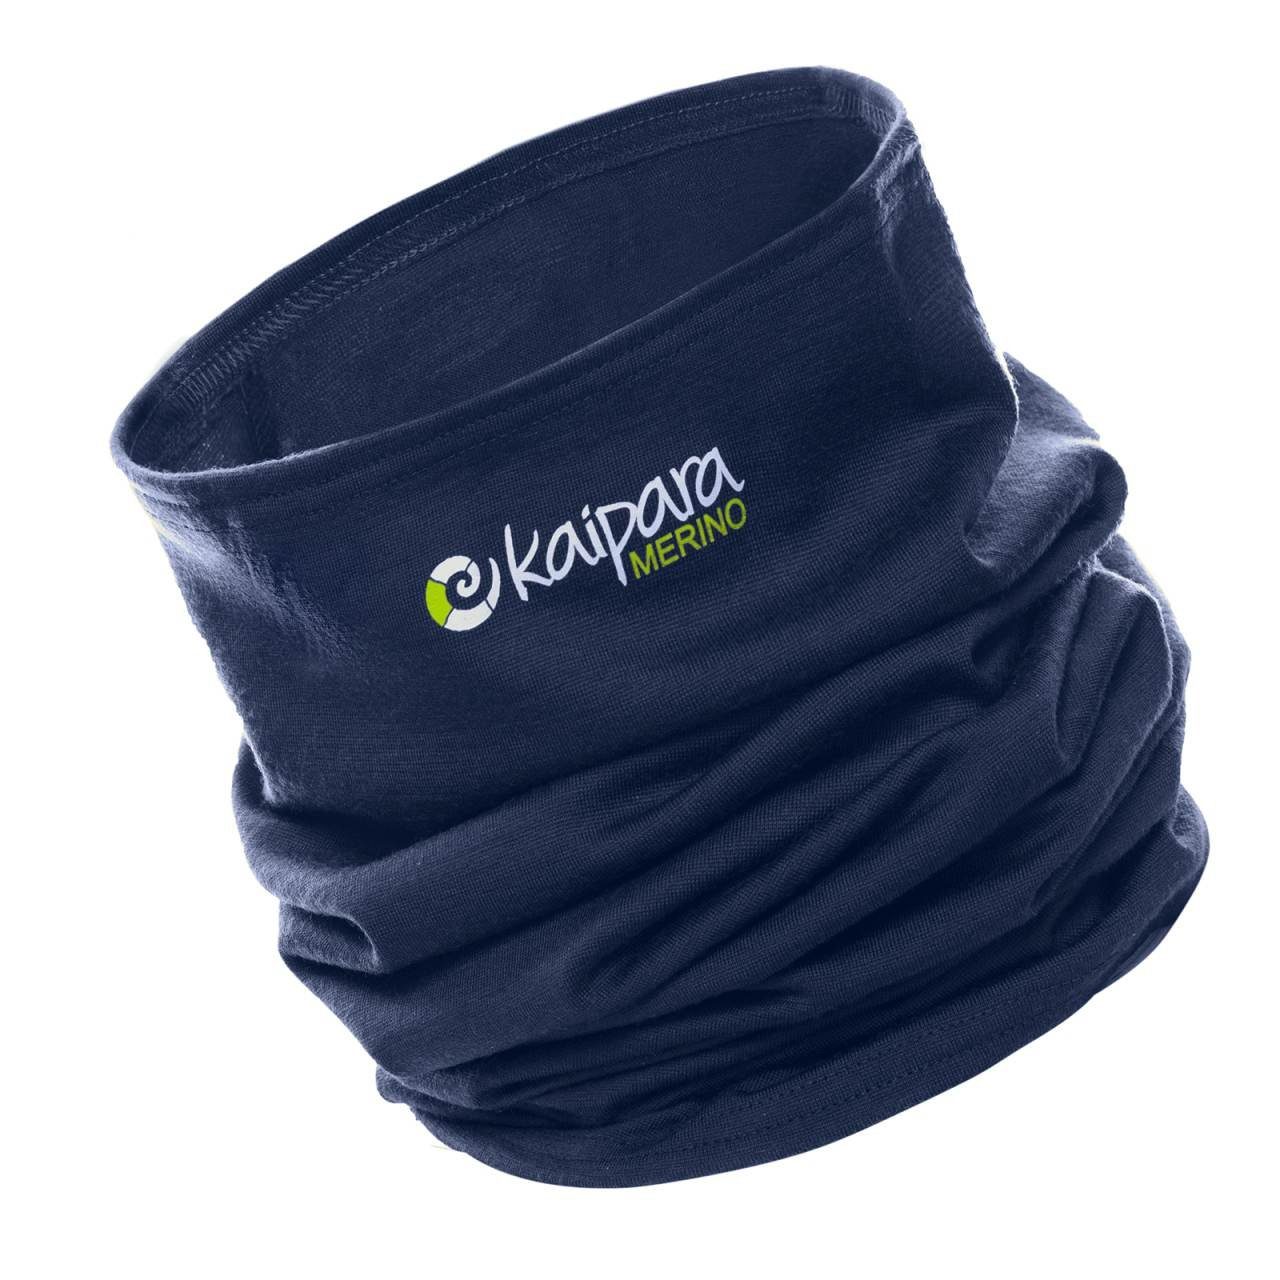 reiner 200, - Kaipara Sportswear Made aus in Unisex Bandana Germany Merino Merino Merinowolle Blau Schal